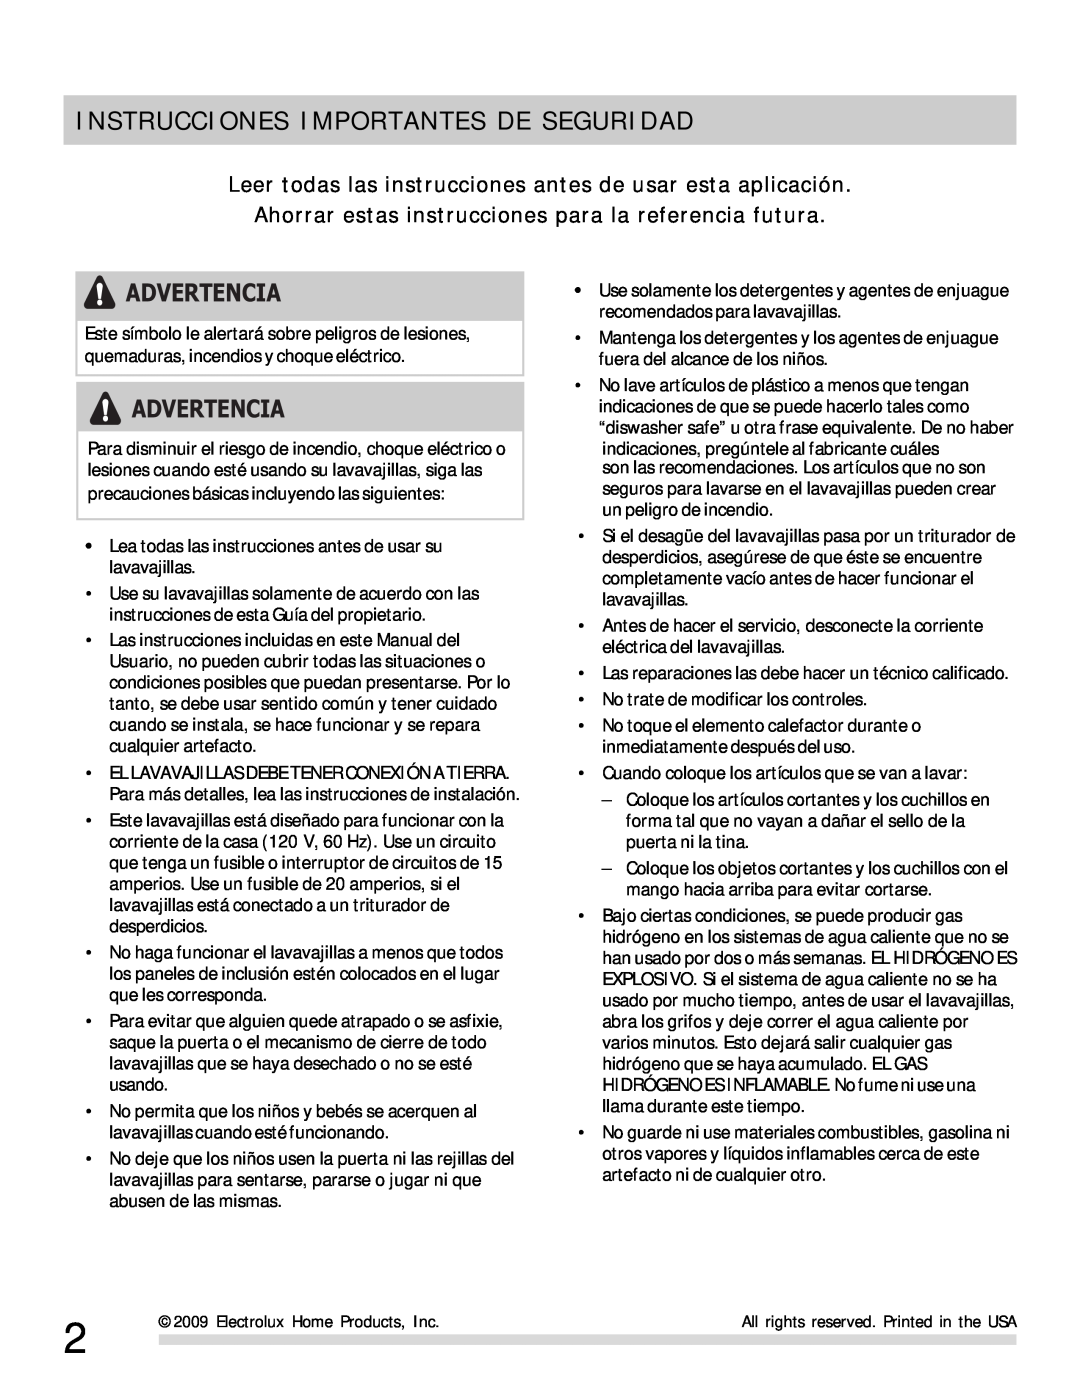 Frigidaire 154768703 manual Instrucciones Importantes De Seguridad, Advertencia 